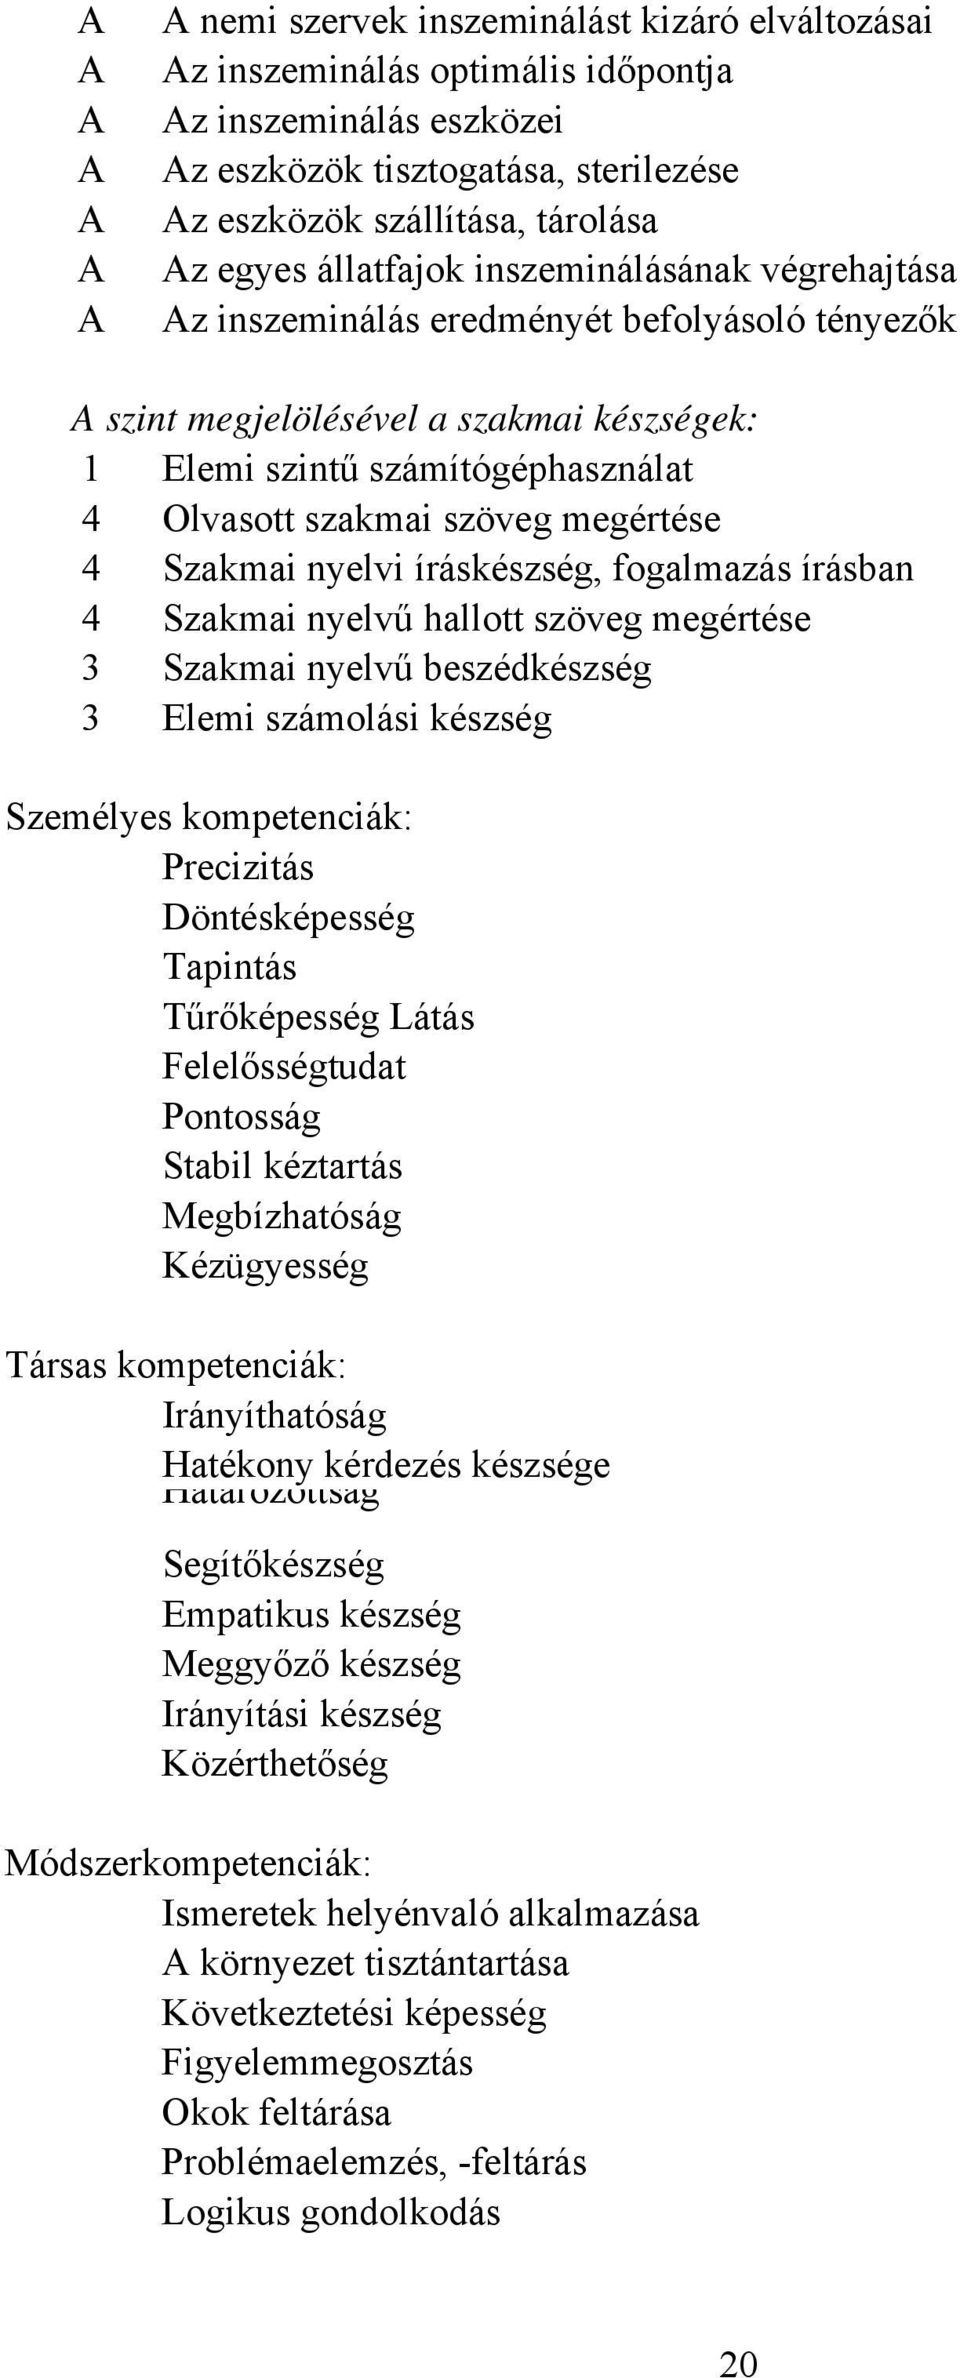 nyelvi íráskészség, fogalmazás írásban 4 Szakmai nyelvű hallott szöveg megértése 3 Szakmai nyelvű beszédkészség 3 Elemi számolási készség Személyes kompetenciák: Precizitás Döntésképesség Tapintás